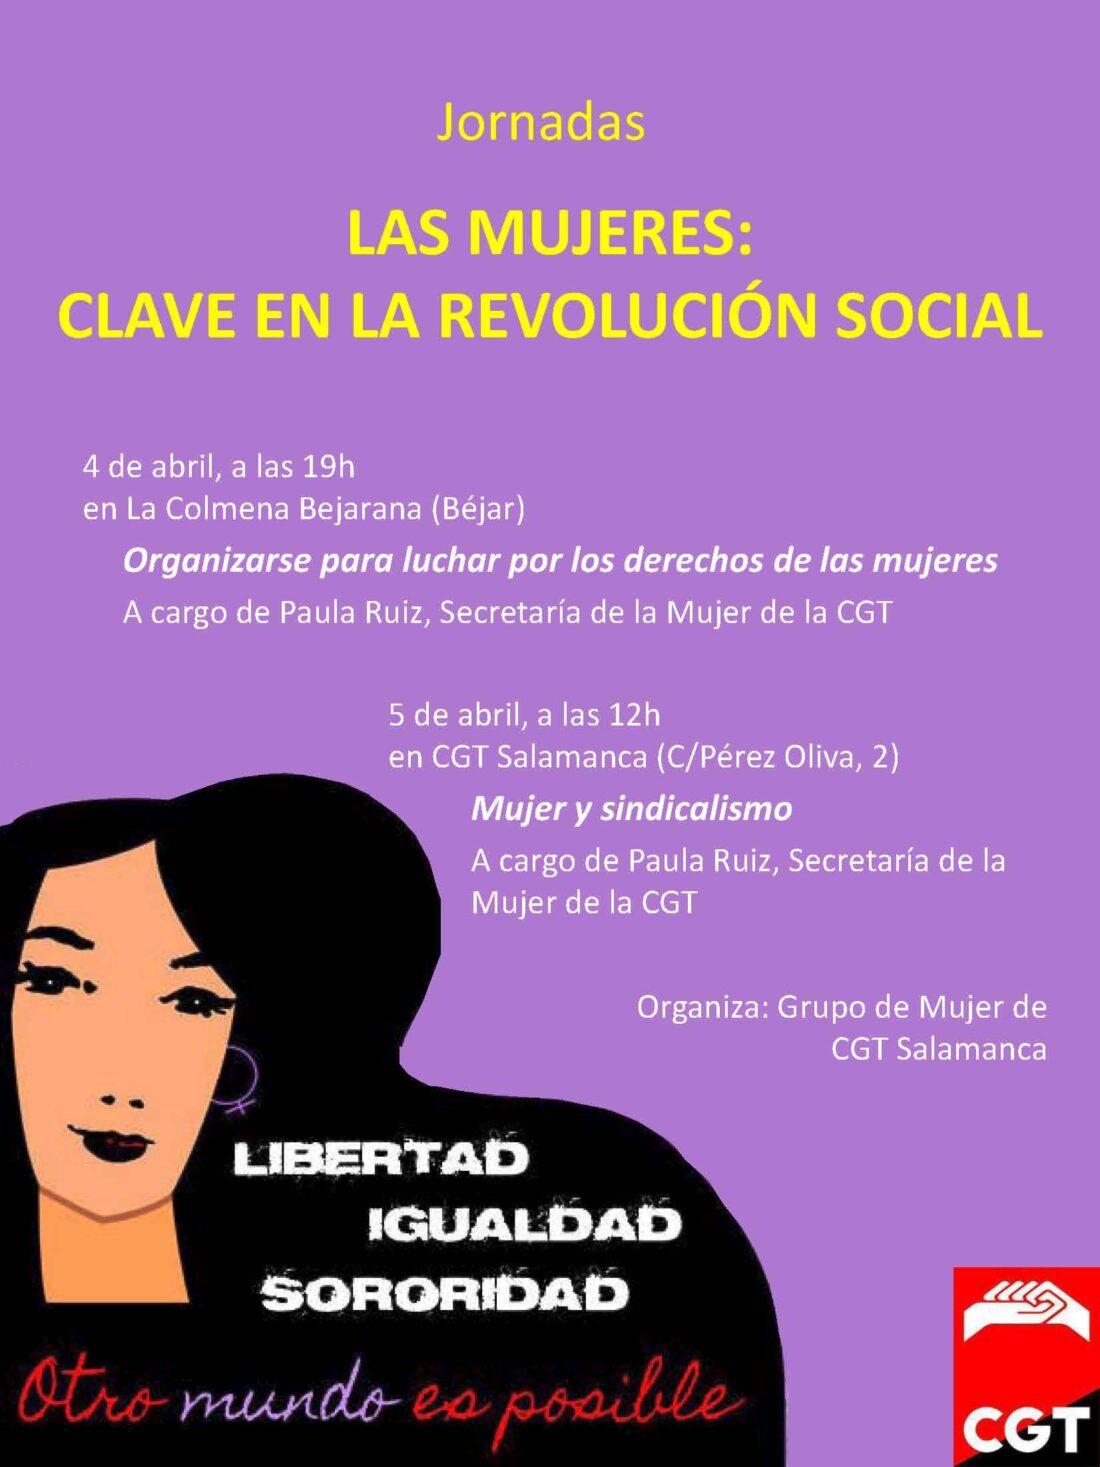 Jornadas «Las mujeres: clave de la revolución social» en Béjar